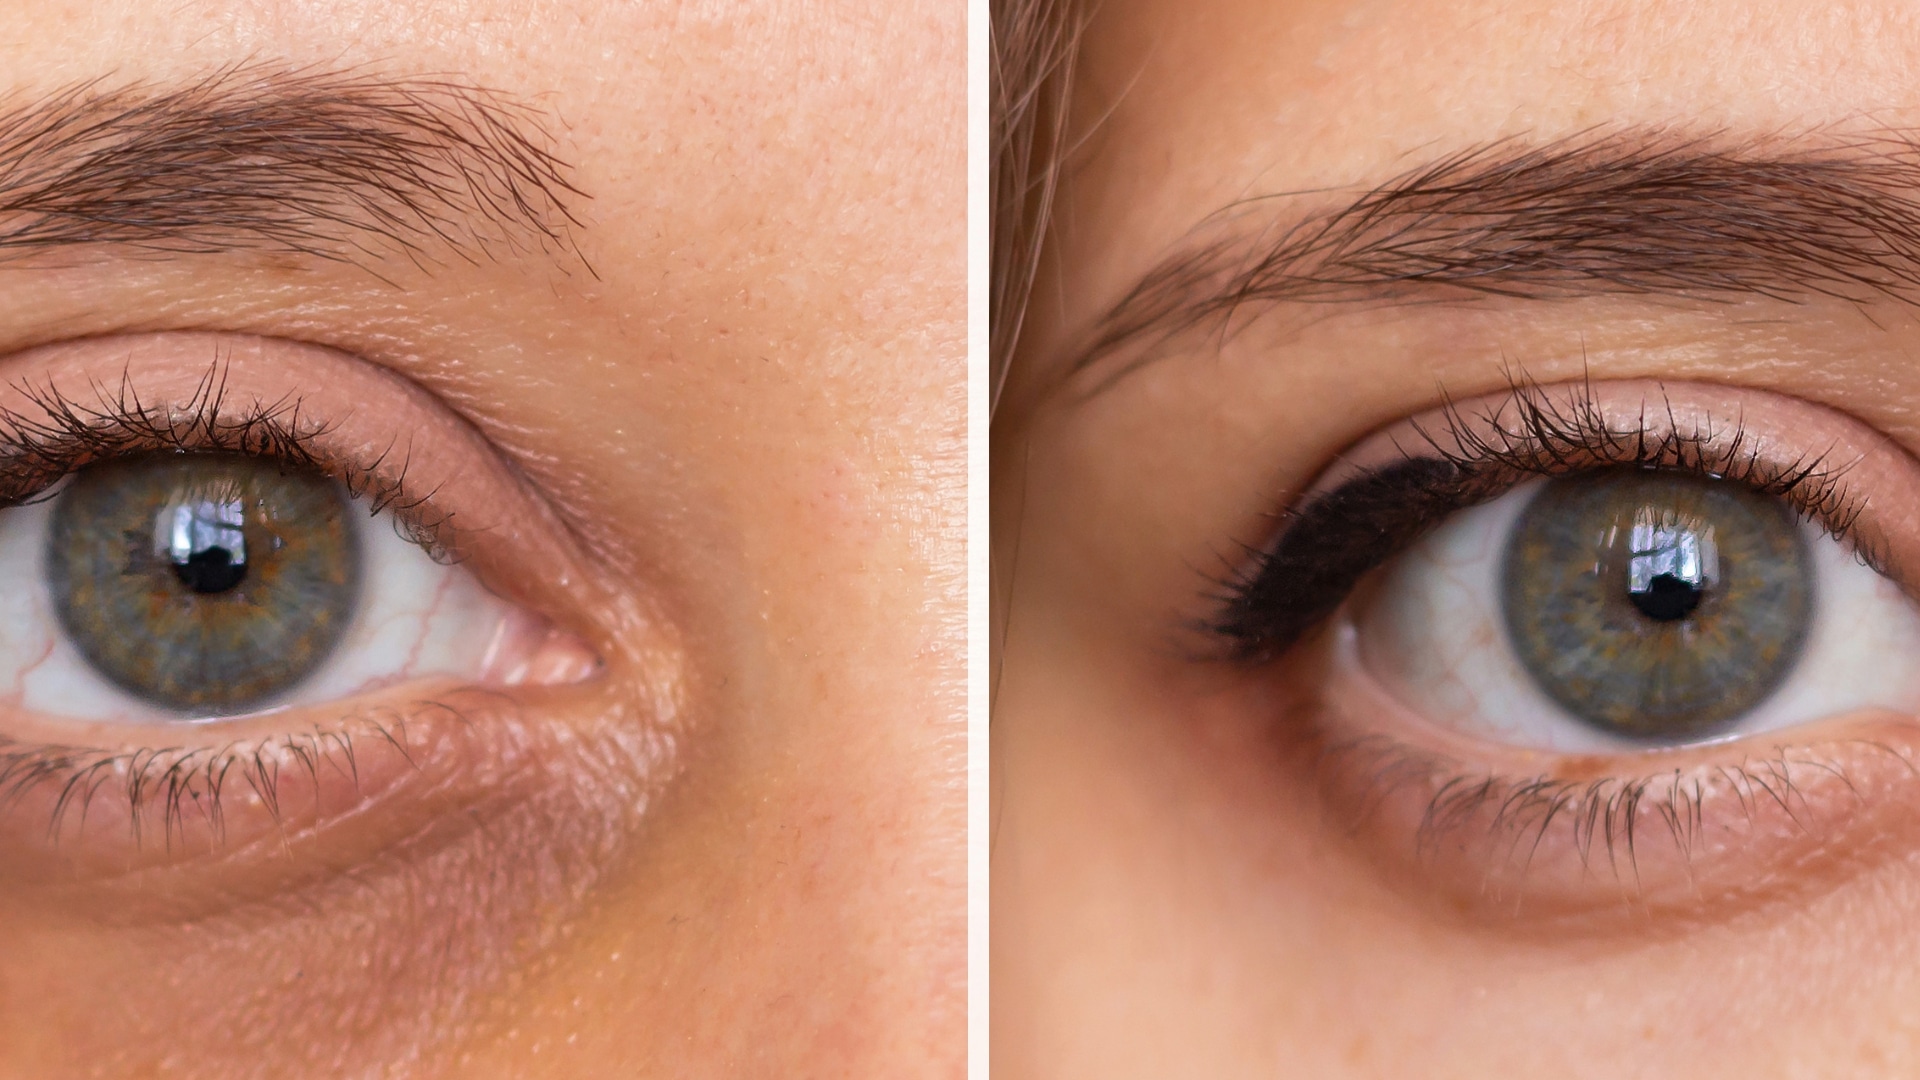 Entdecken Sie Lutein, das natürliche Carotinoid mit filternden und antioxidativen Eigenschaften, das sich als Schutzschild für unsere Augen erweist.